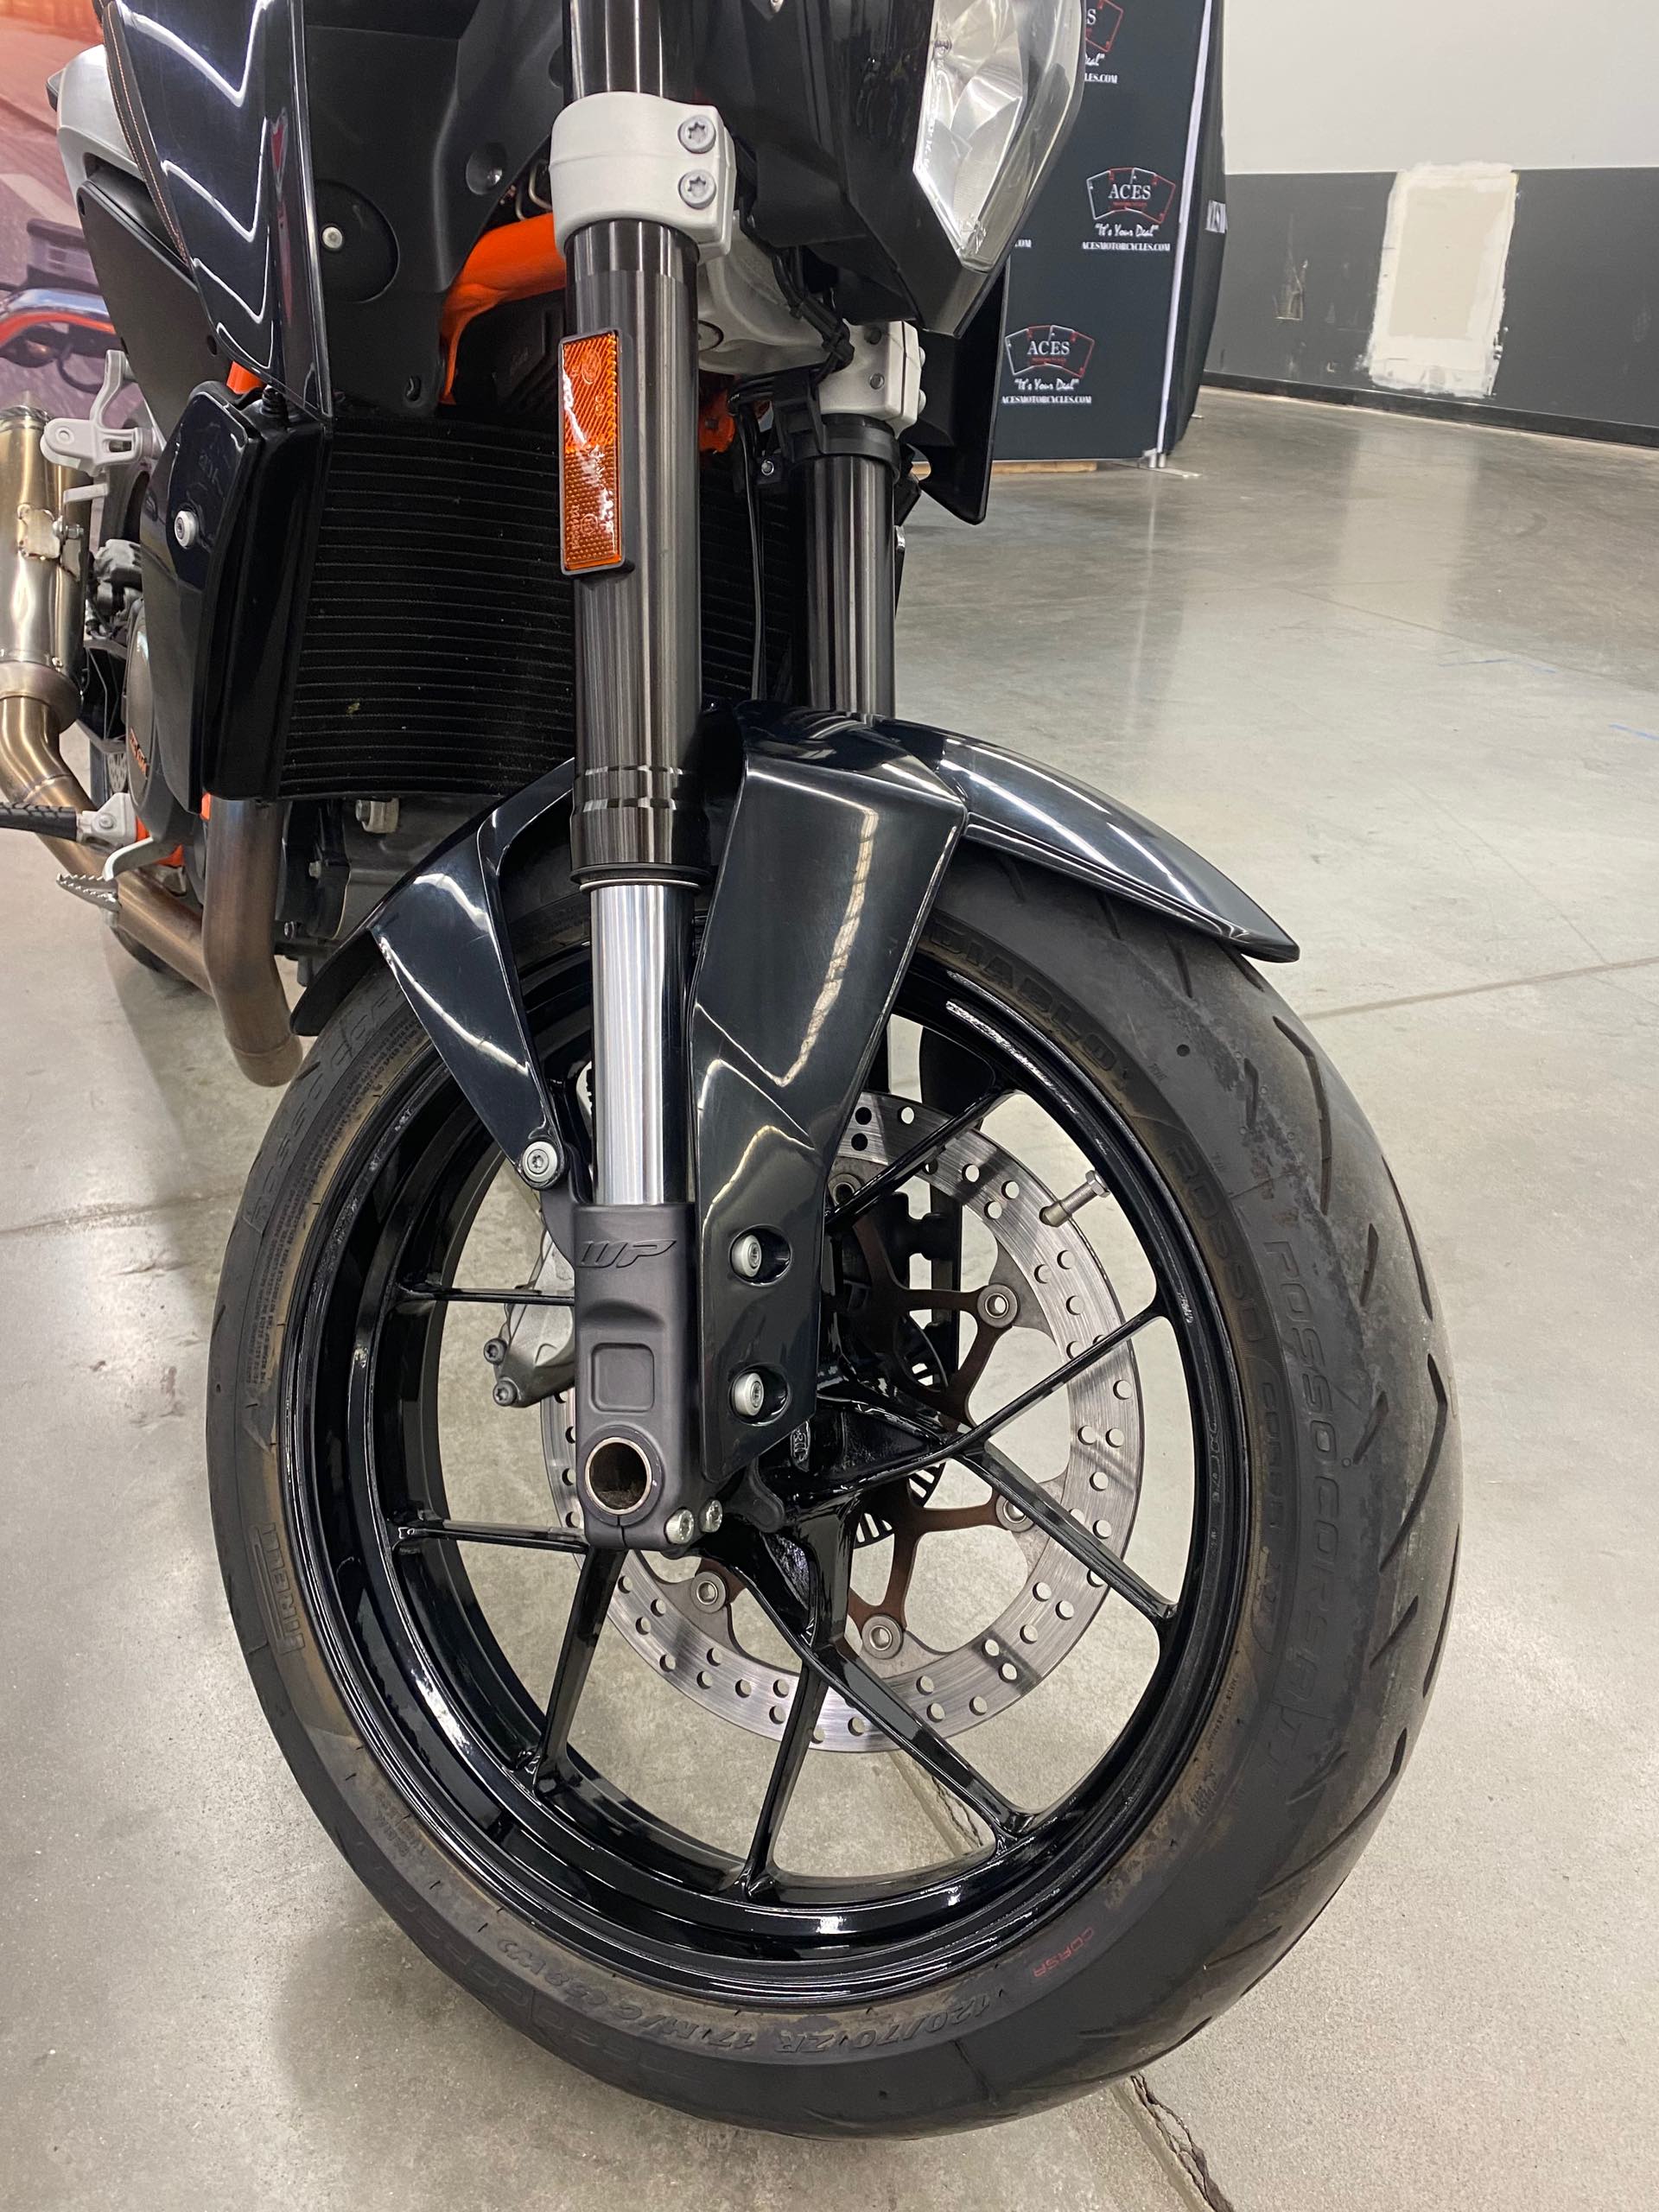 2013 KTM Duke 690 at Aces Motorcycles - Denver